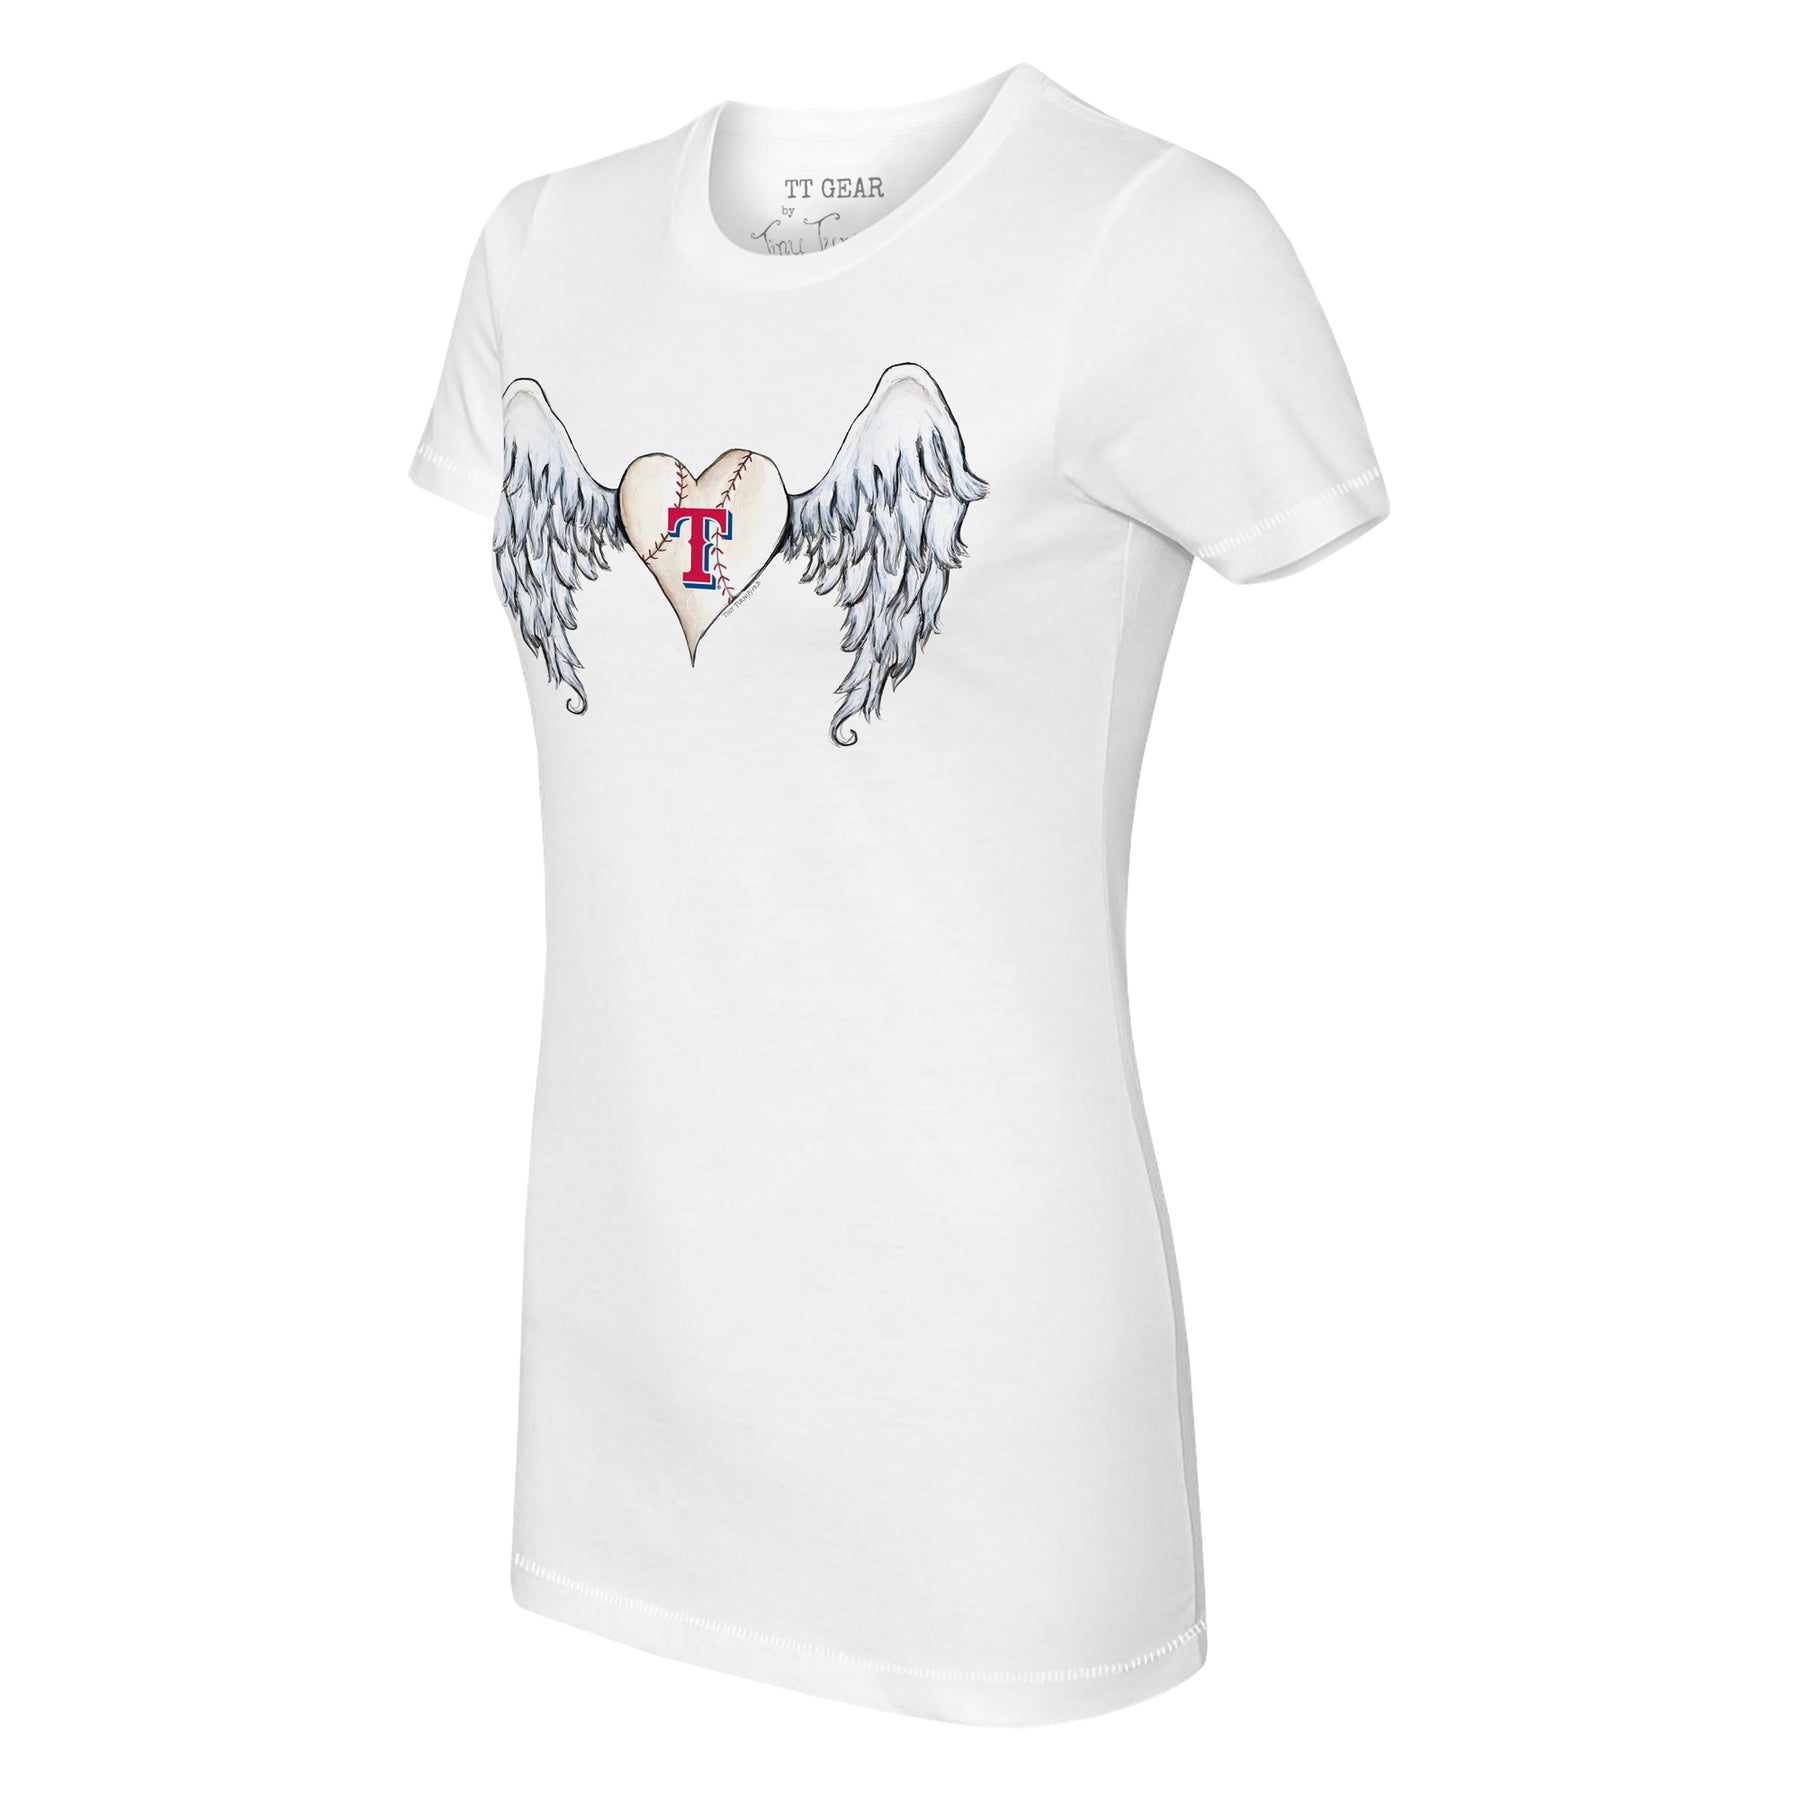 Girls Youth Tiny Turnip White Texas Rangers Baseball Tiara Heart Fringe T-Shirt Size: Extra Large